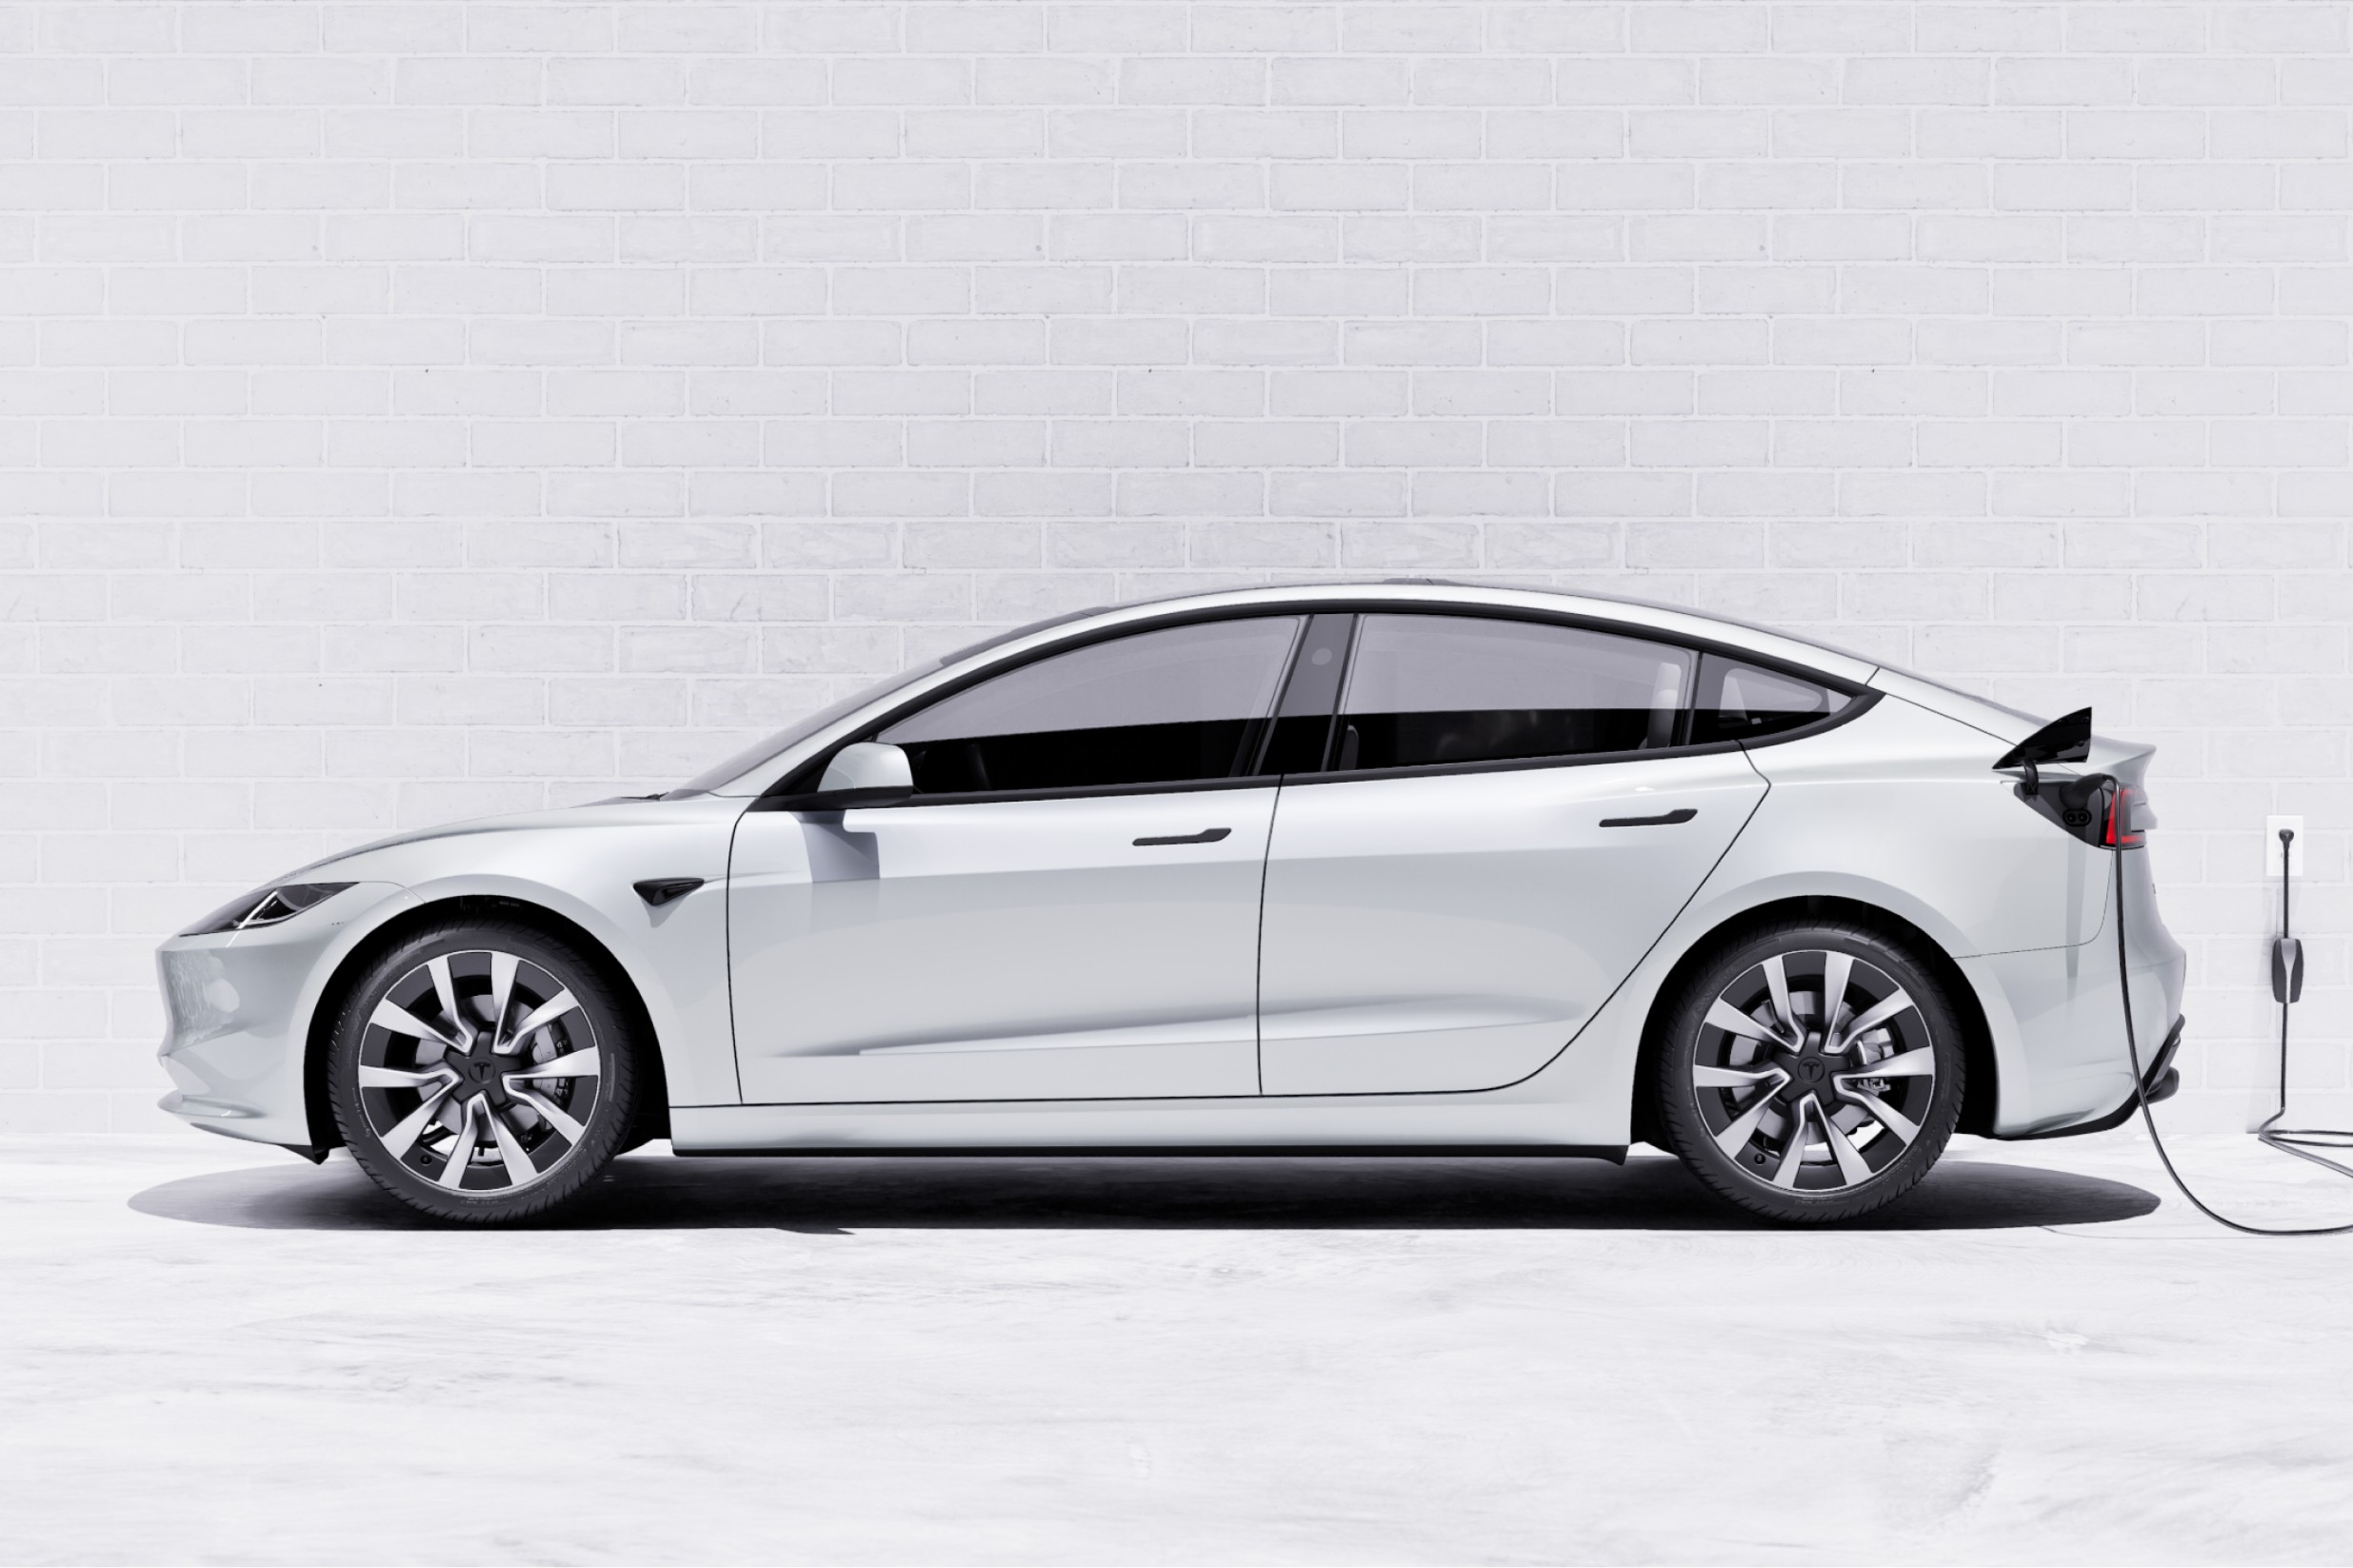 Tesla Model 3 (Highland) test drive: Making a good first impression 